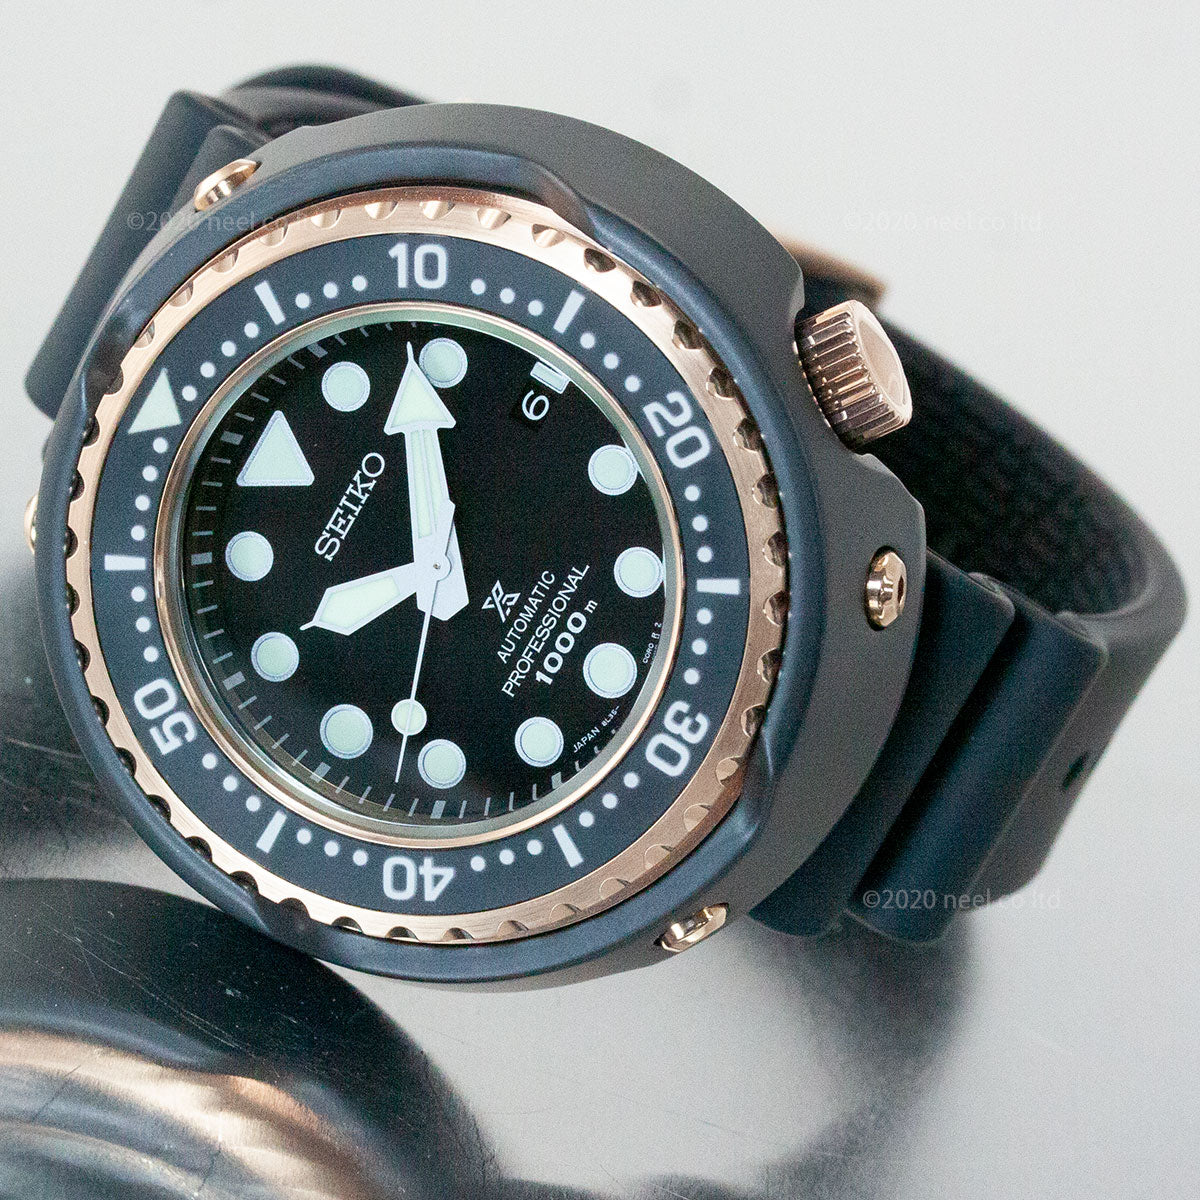 セイコー プロスペックス SEIKO PROSPEX マリーンマスター プロフェッショナル ダイバーズ メカニカル 自動巻き コアショップ専用モデル  腕時計 メンズ SBDX038